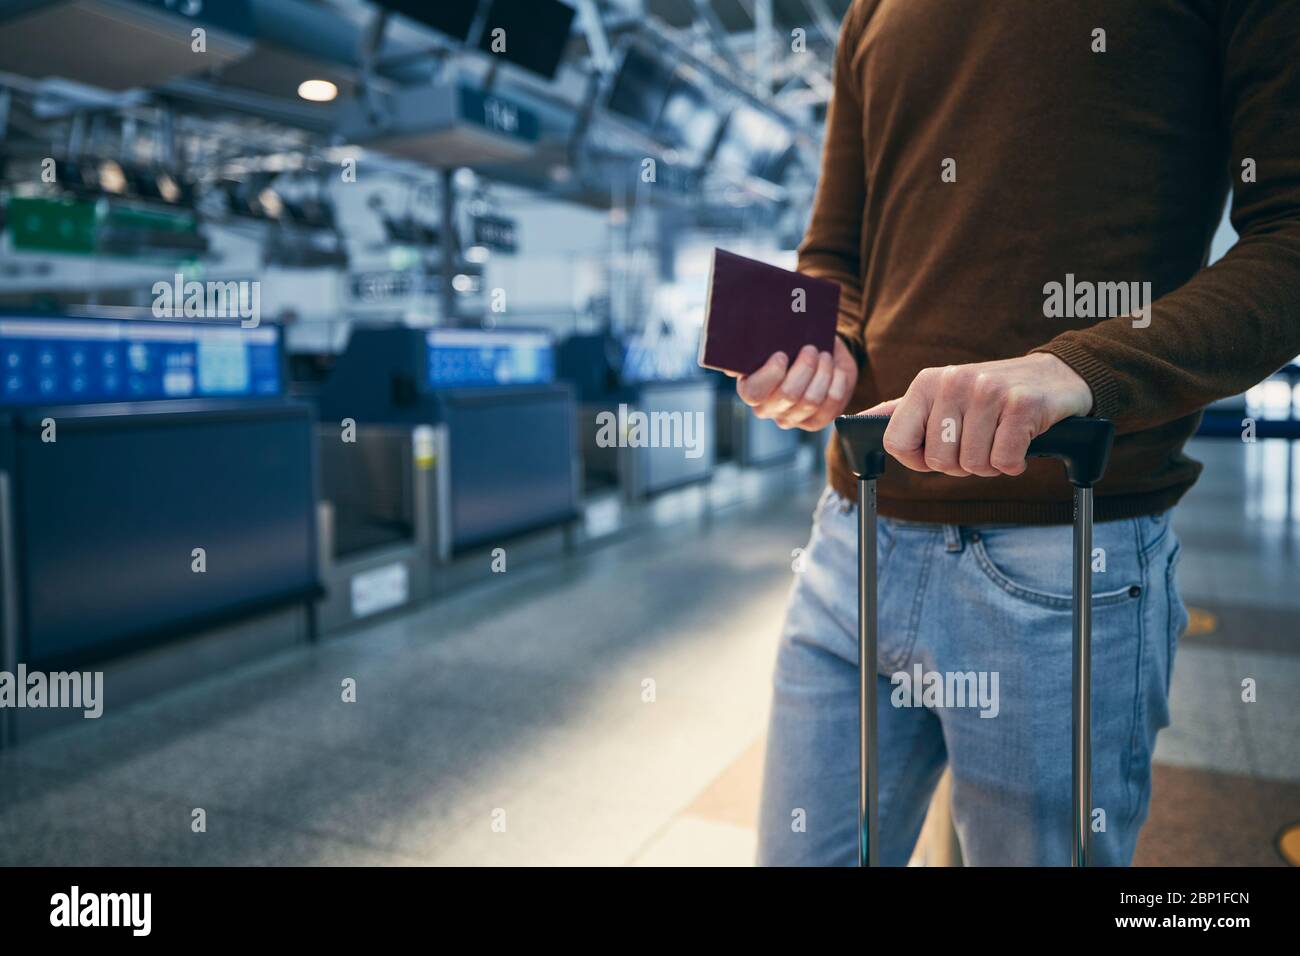 Passeggero contro il banco di check-in all'aeroporto. Mani di giovane uomo che tiene valigia e passaporto. Foto Stock